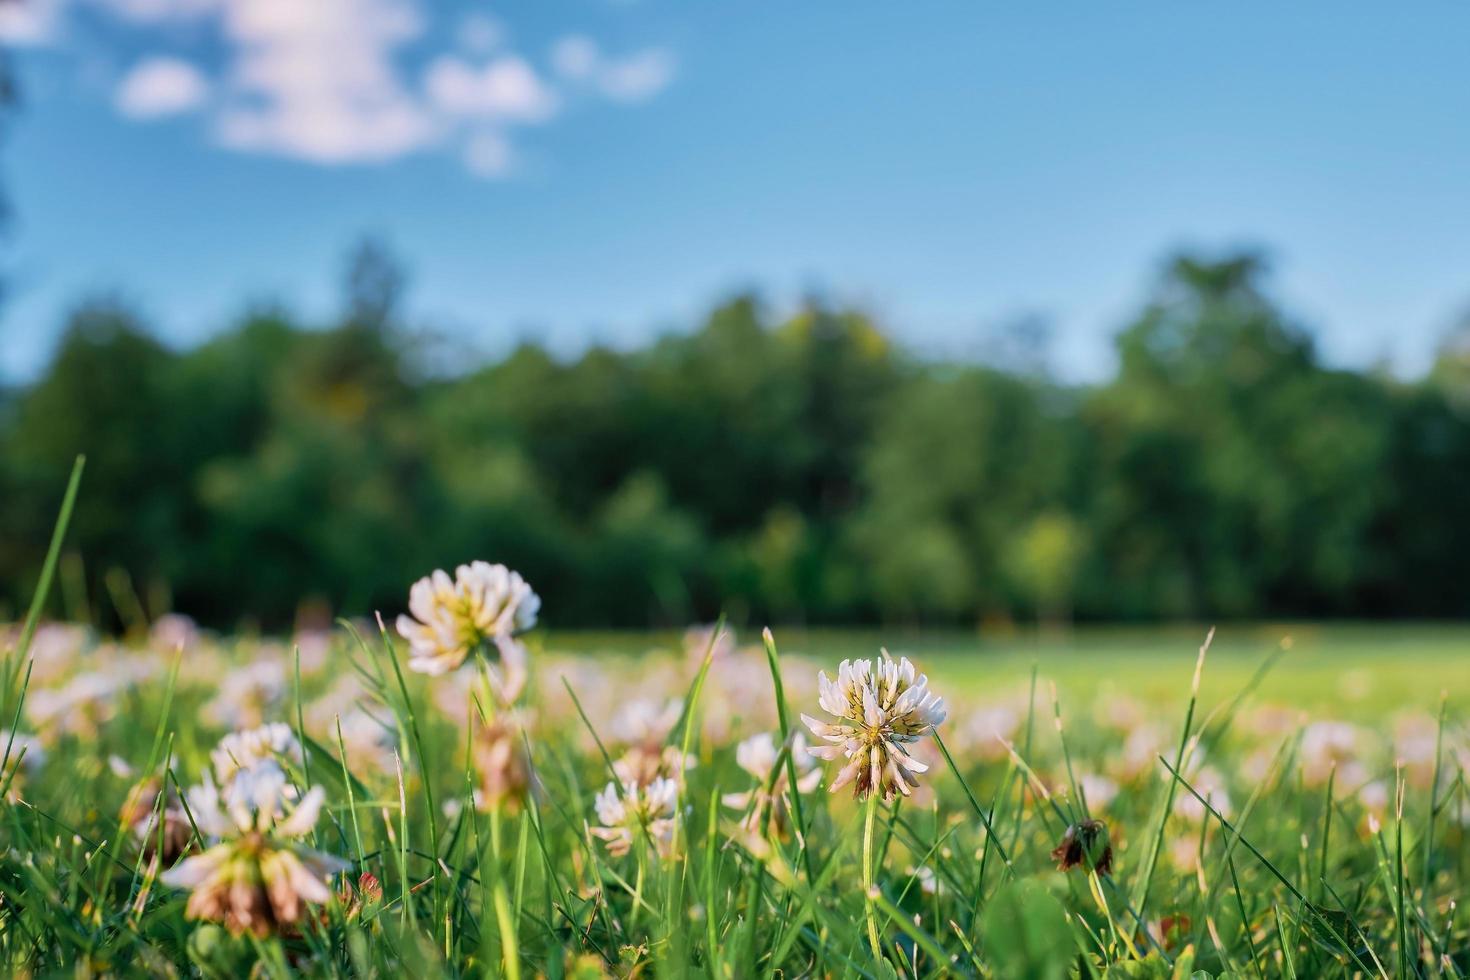 beau paysage panoramique naturel d'été ou de printemps avec des fleurs de trèfle dans un pré contre un ciel bleu avec des nuages blancs et une ligne de forêt. image artistique expressive lumineuse de la nature estivale. photo